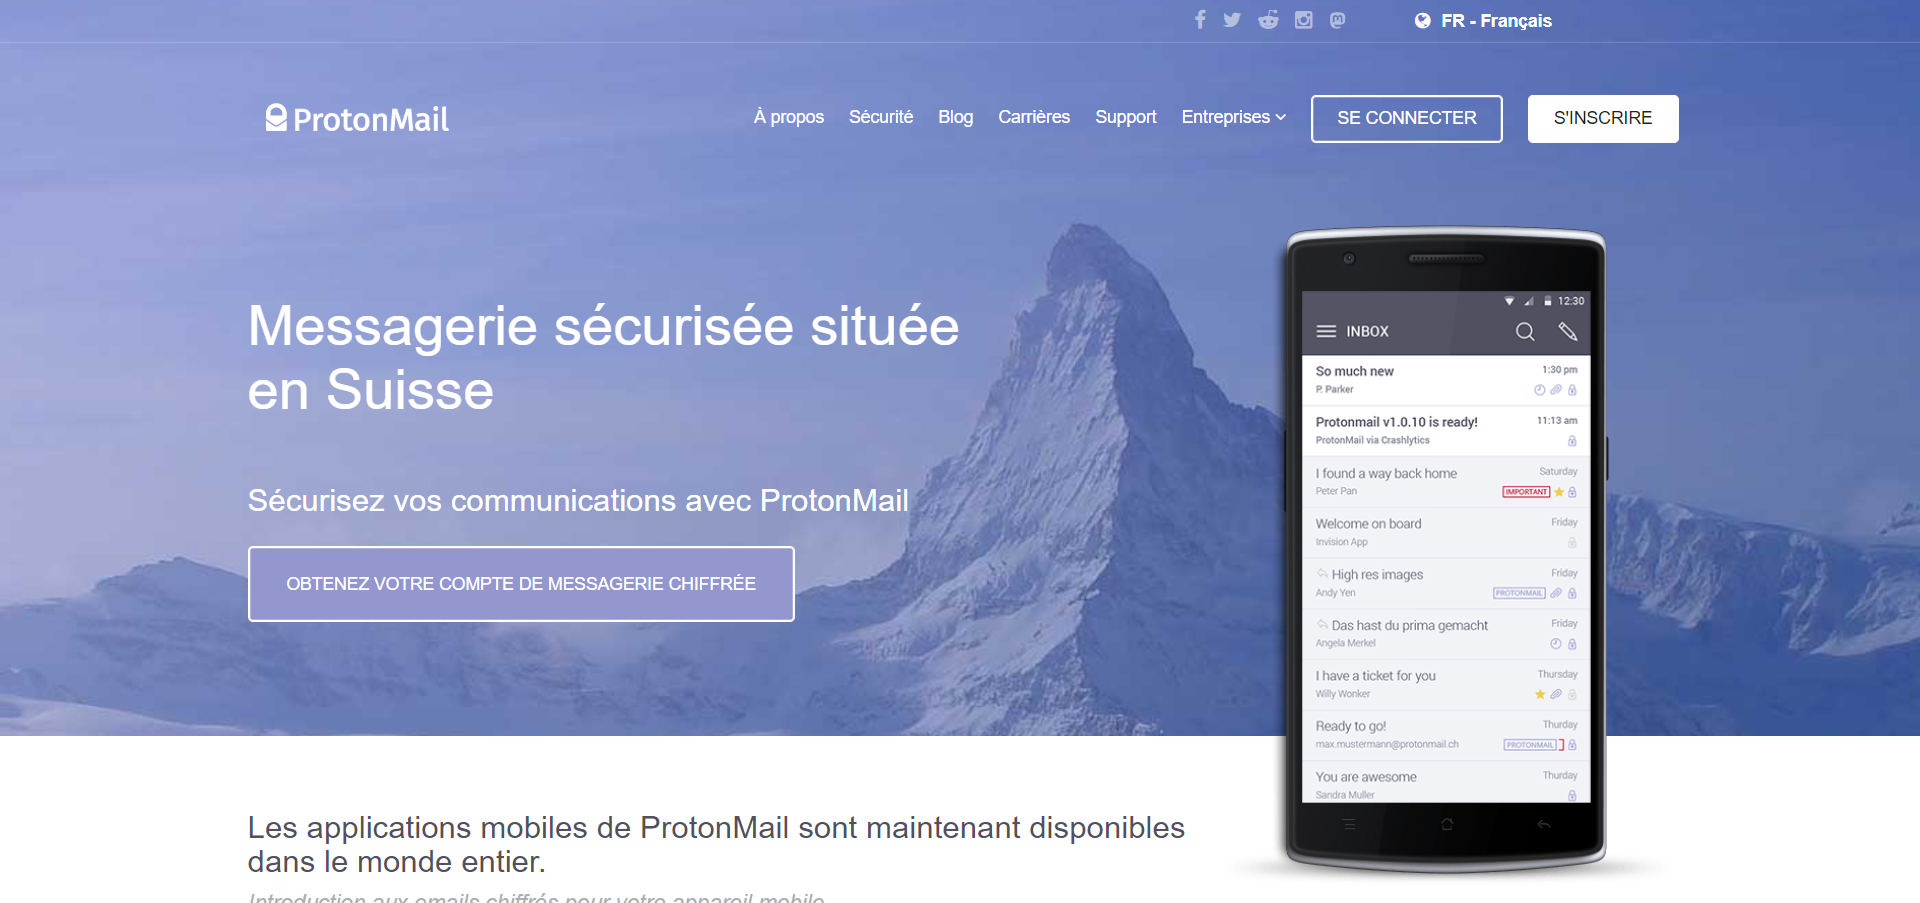 Meilleure Alternatives à Gmail : Protonmail, Messagerie sécurisée située  en Suisse